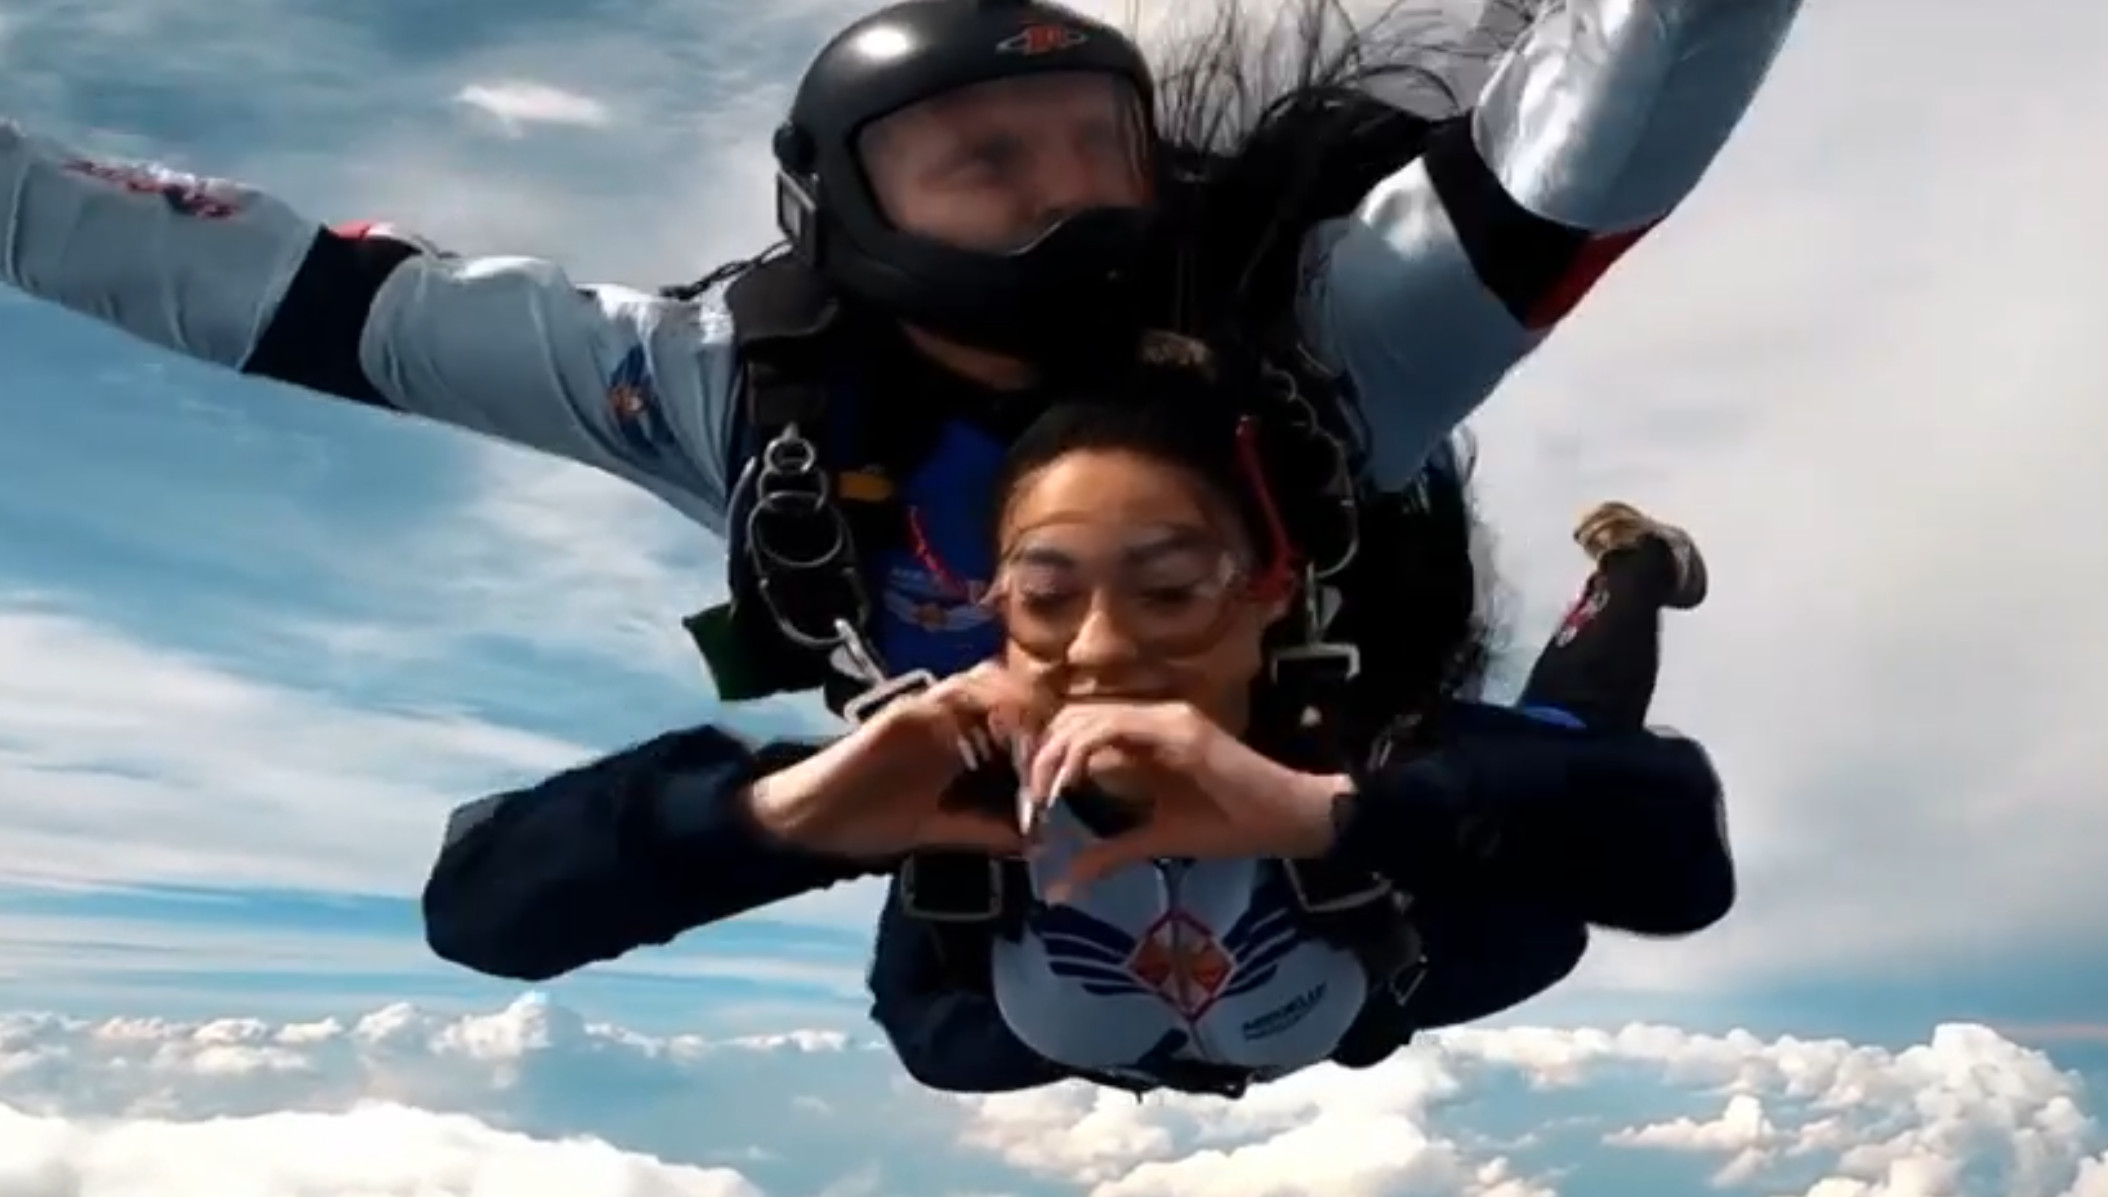 Roxana Orłowska - Roxaok skoczyła ze spadochronem. Zobaczcie nagranie. Spadała z prędkością 235 km/h